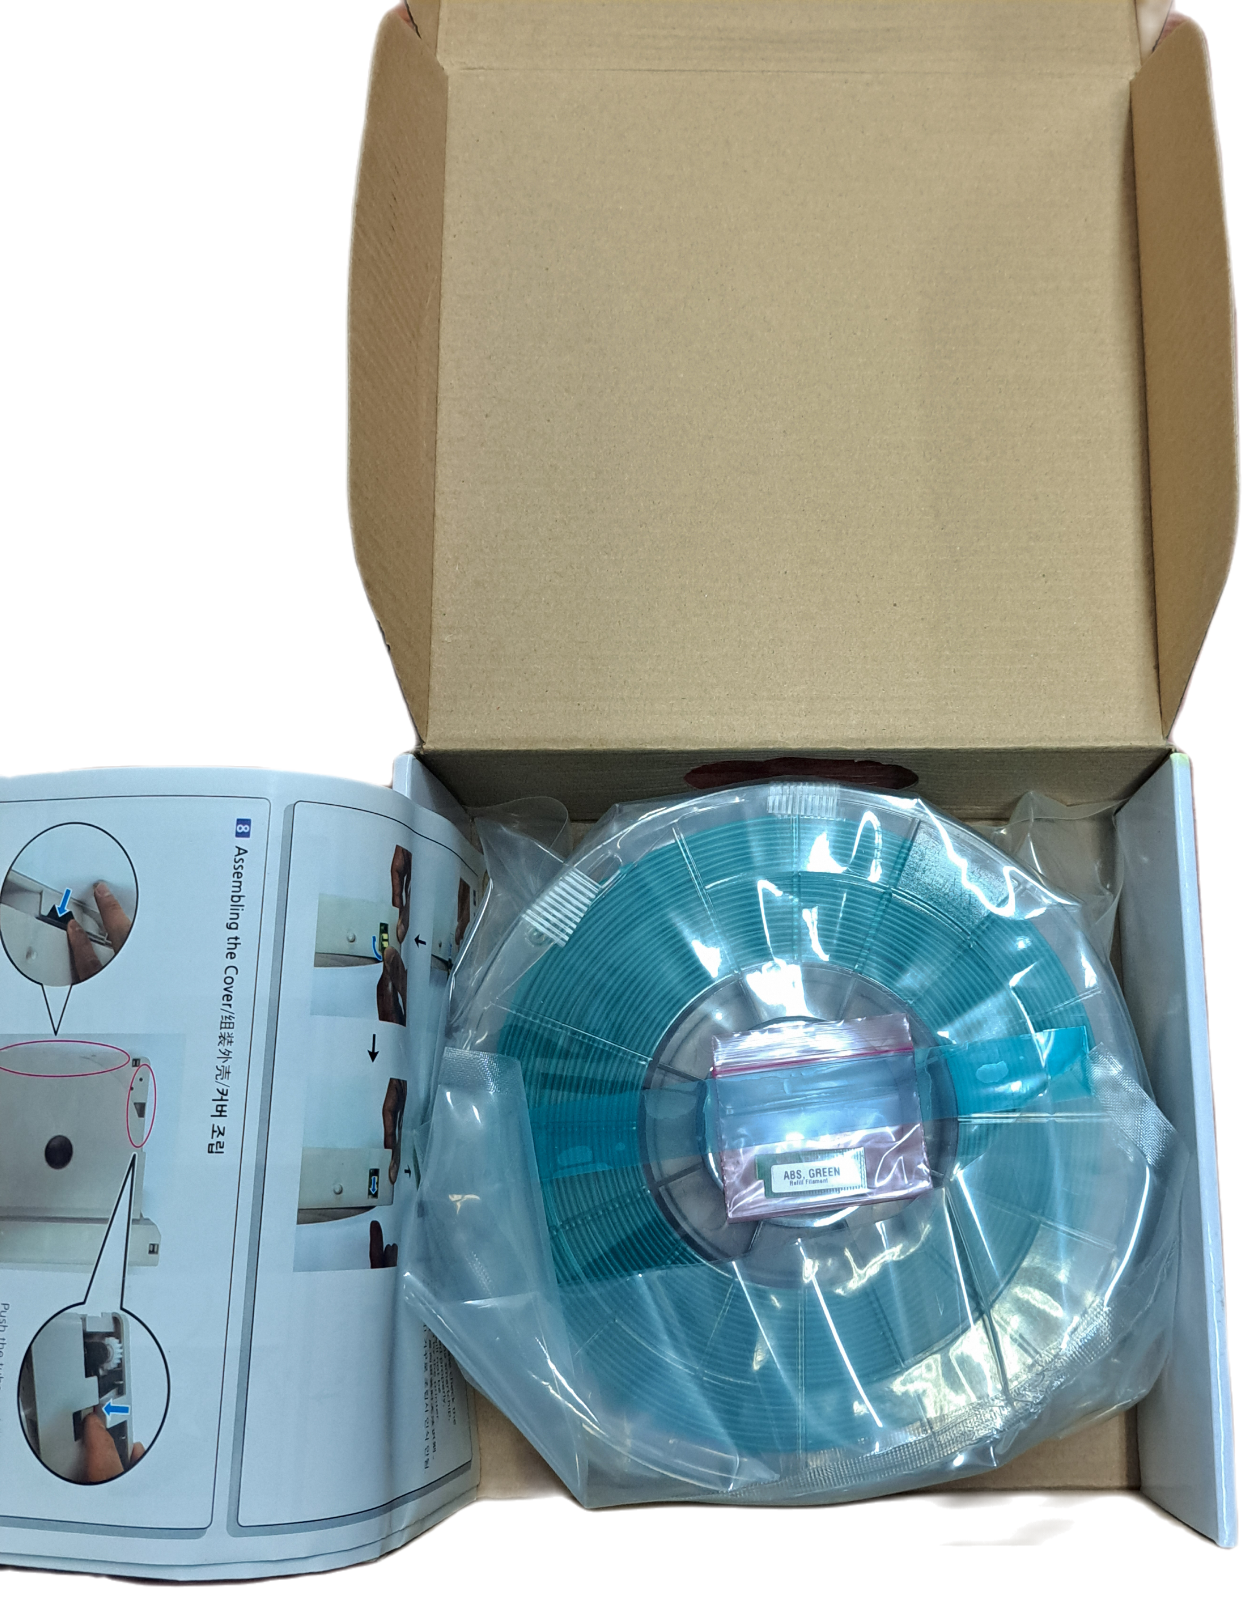 Sindoh DP200 Series 3D Printer Refill Filament- Blue ABS 1.75mm 600g